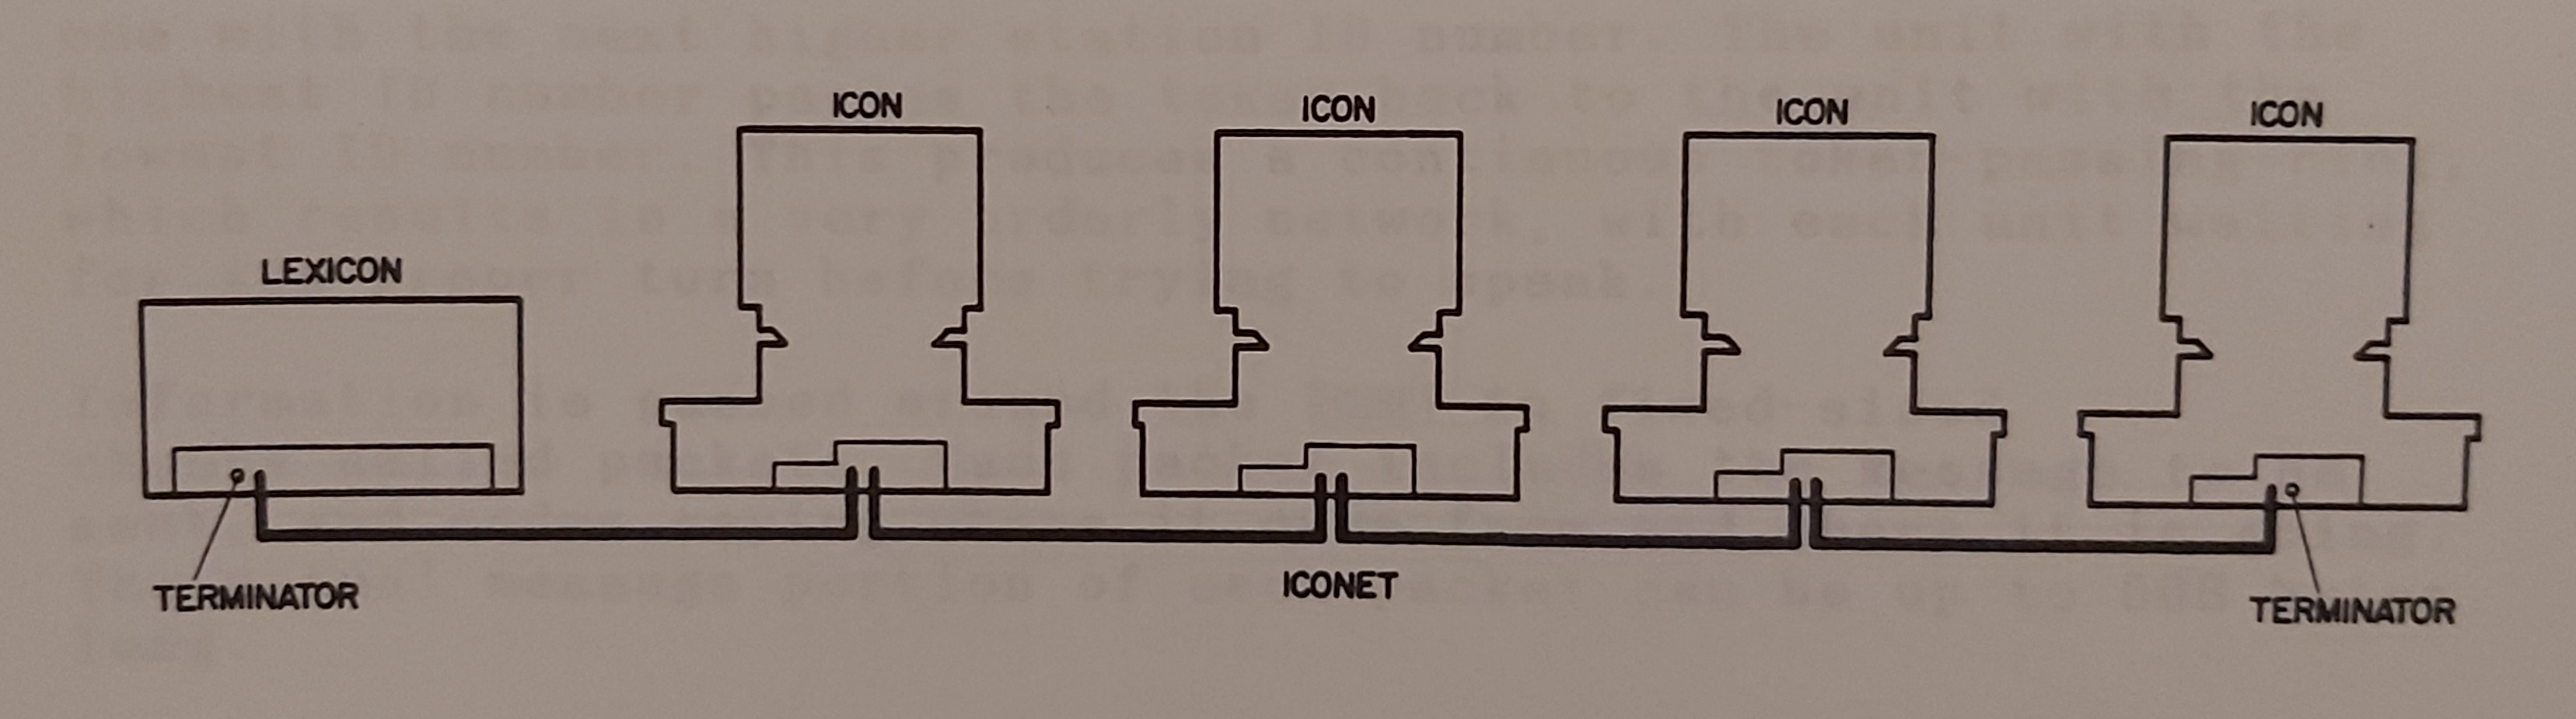 ICONET network